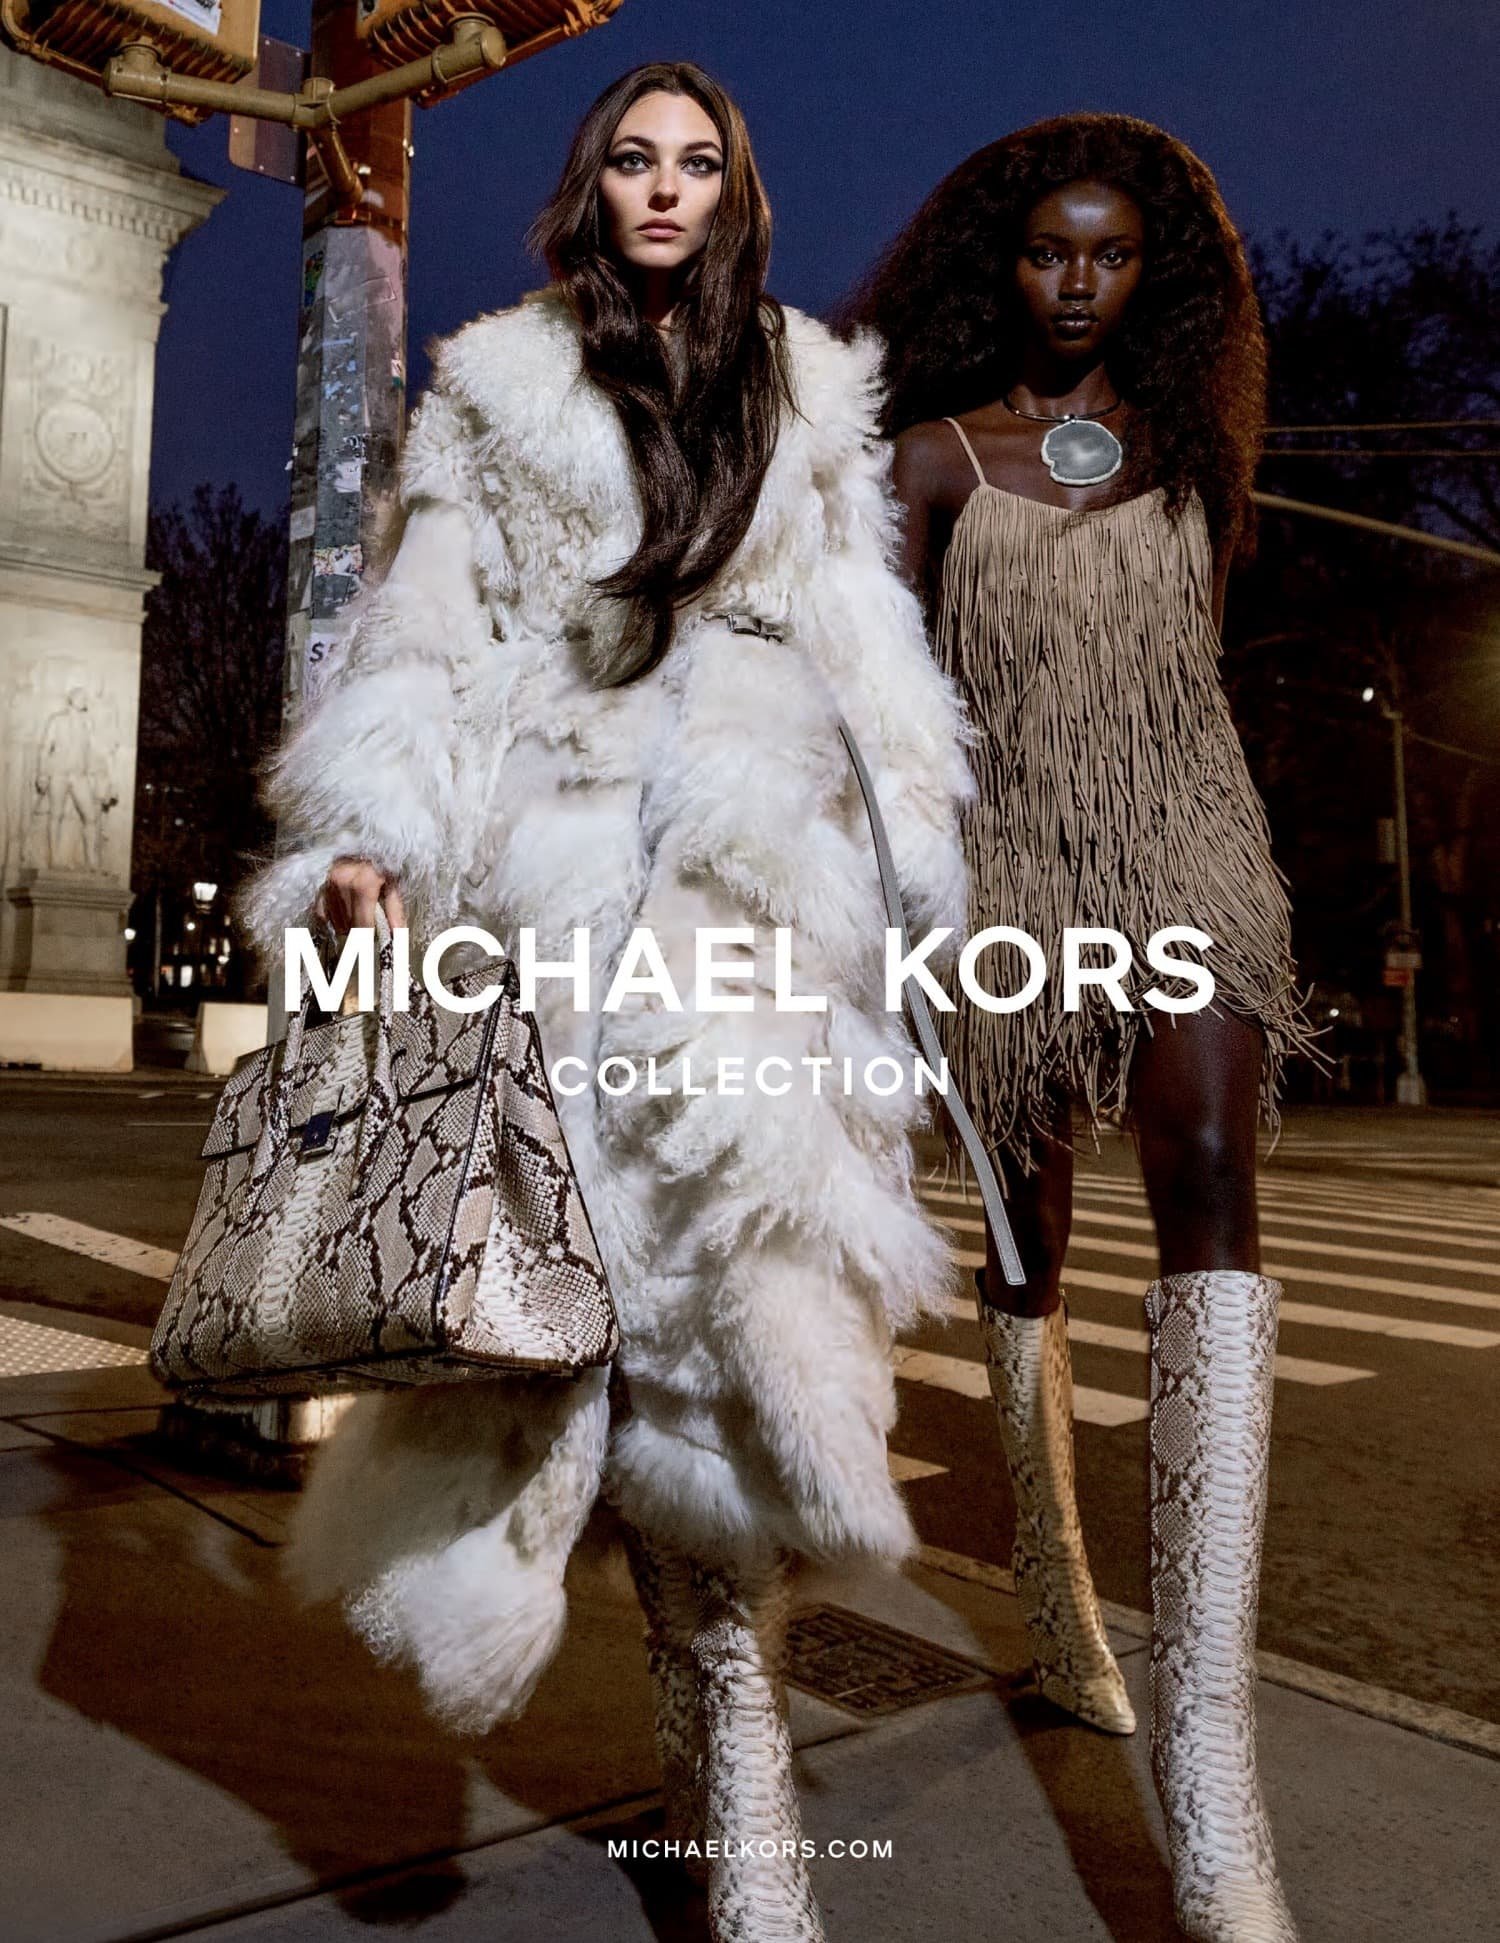 4 Best Michael Kors Handbags - Nov. 2023 - BestReviews